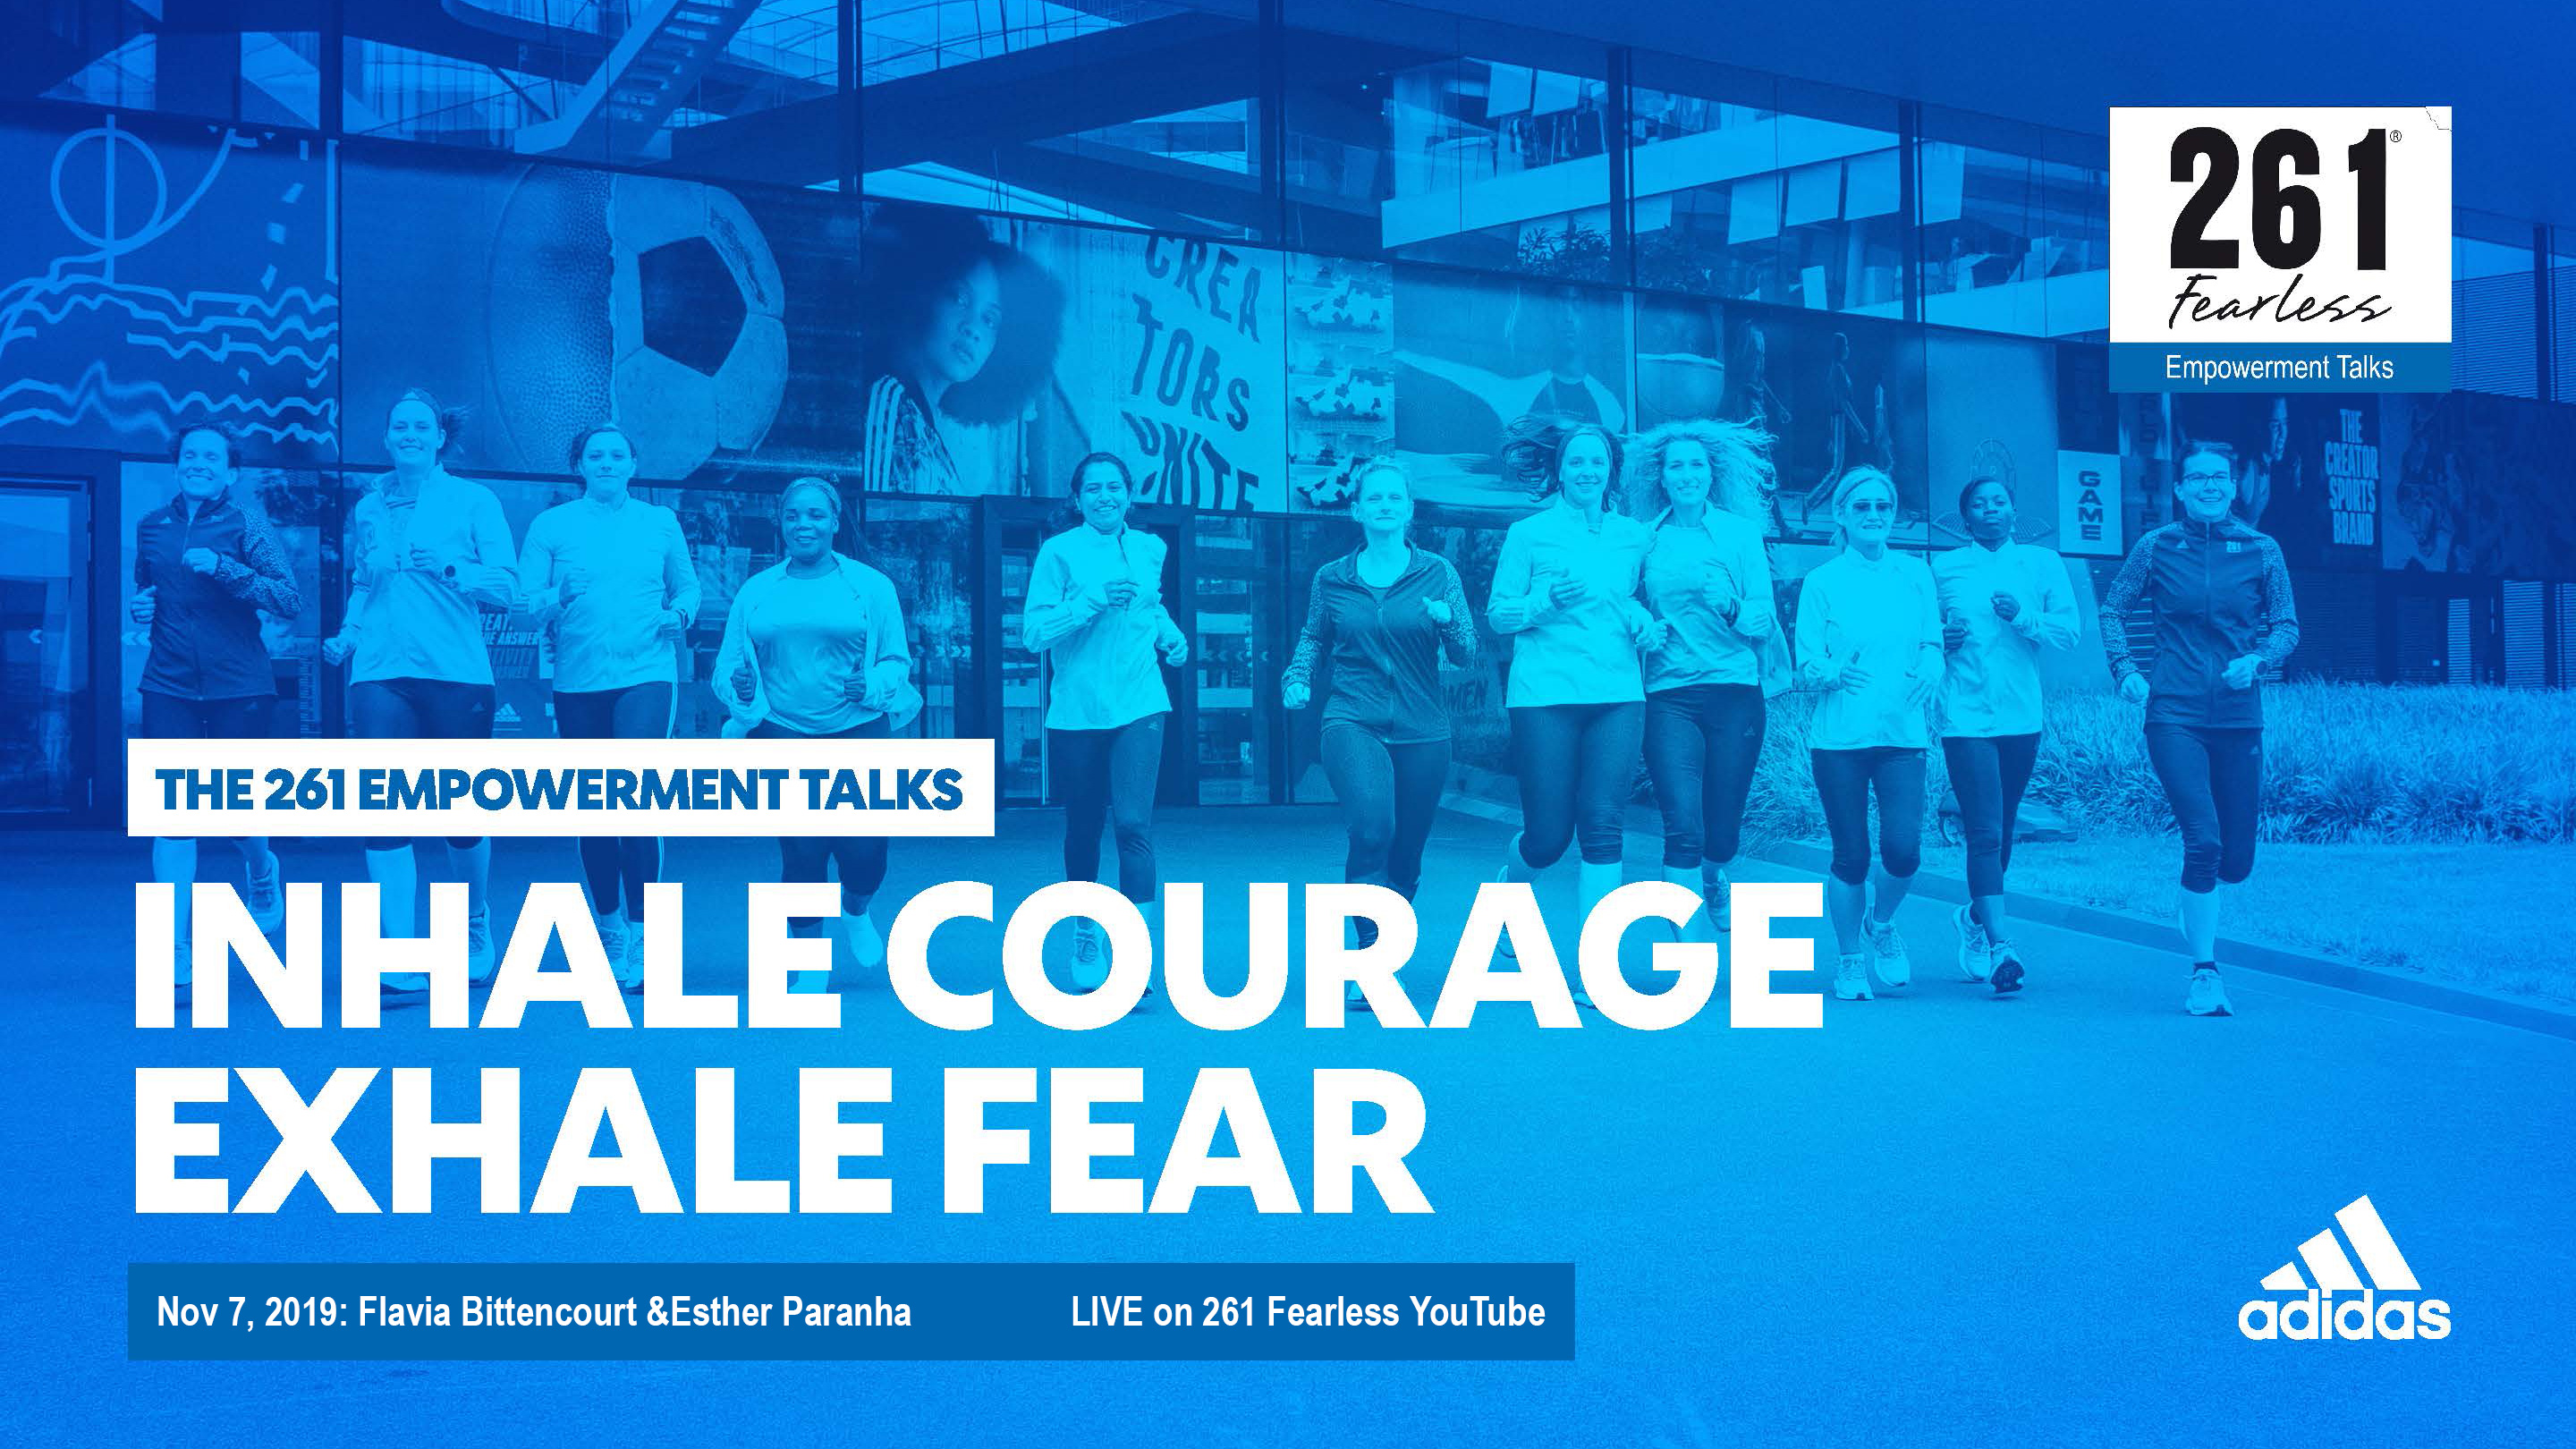 Empowerment Talks 261 Fearless